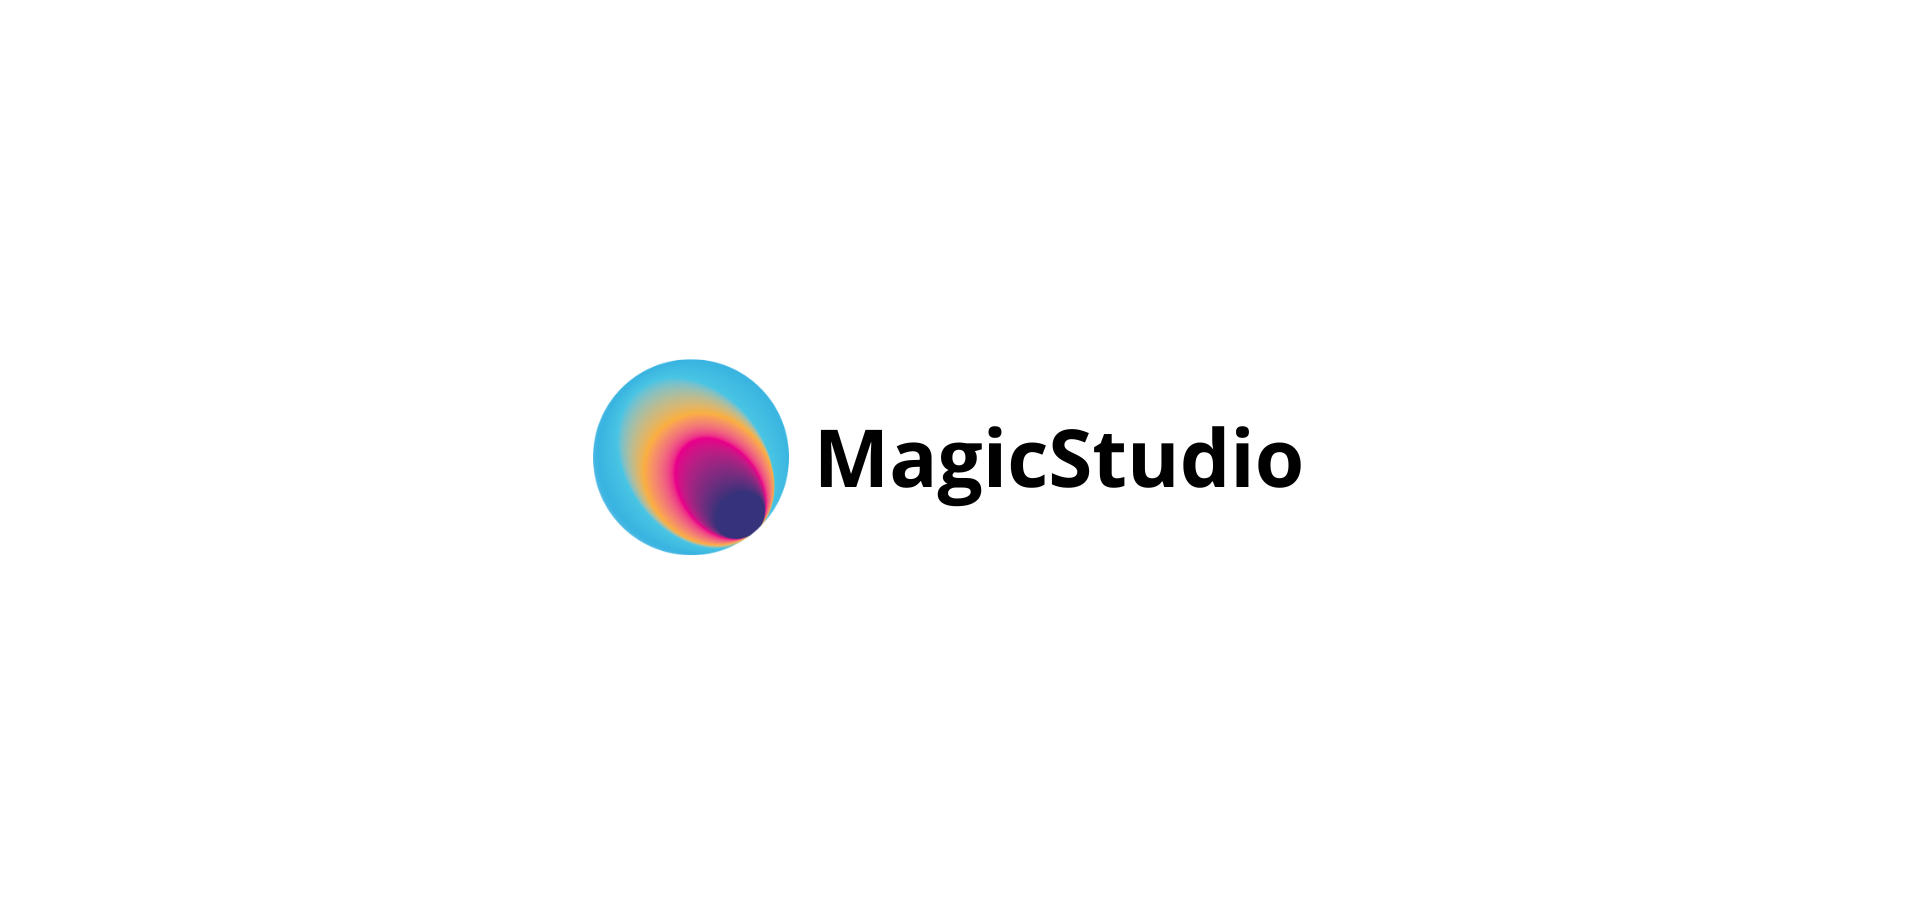 Magic Studio - Create stunning visuals in seconds